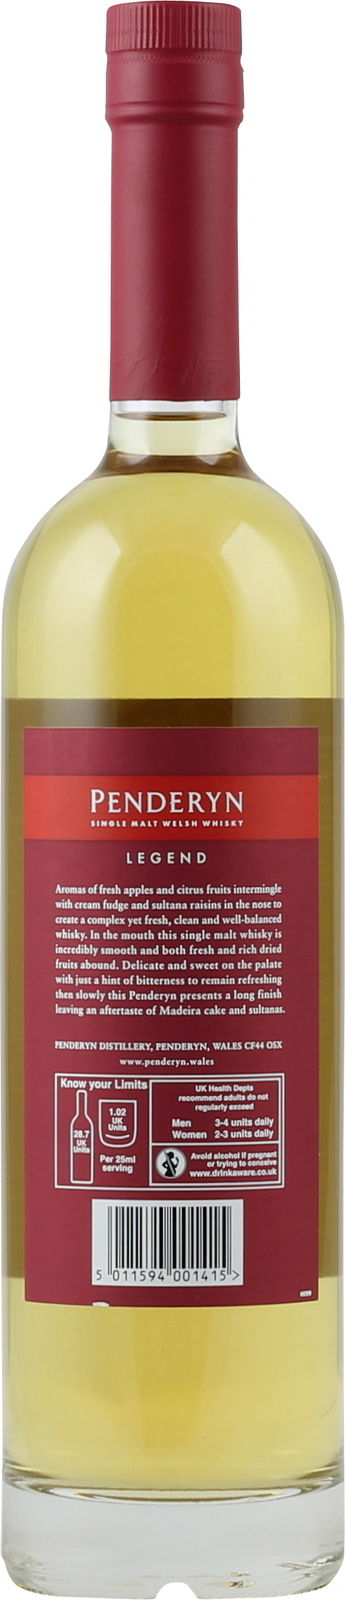 Legend 0,7 Malt Liter Welsh 41% Penderyn Whiskey Single